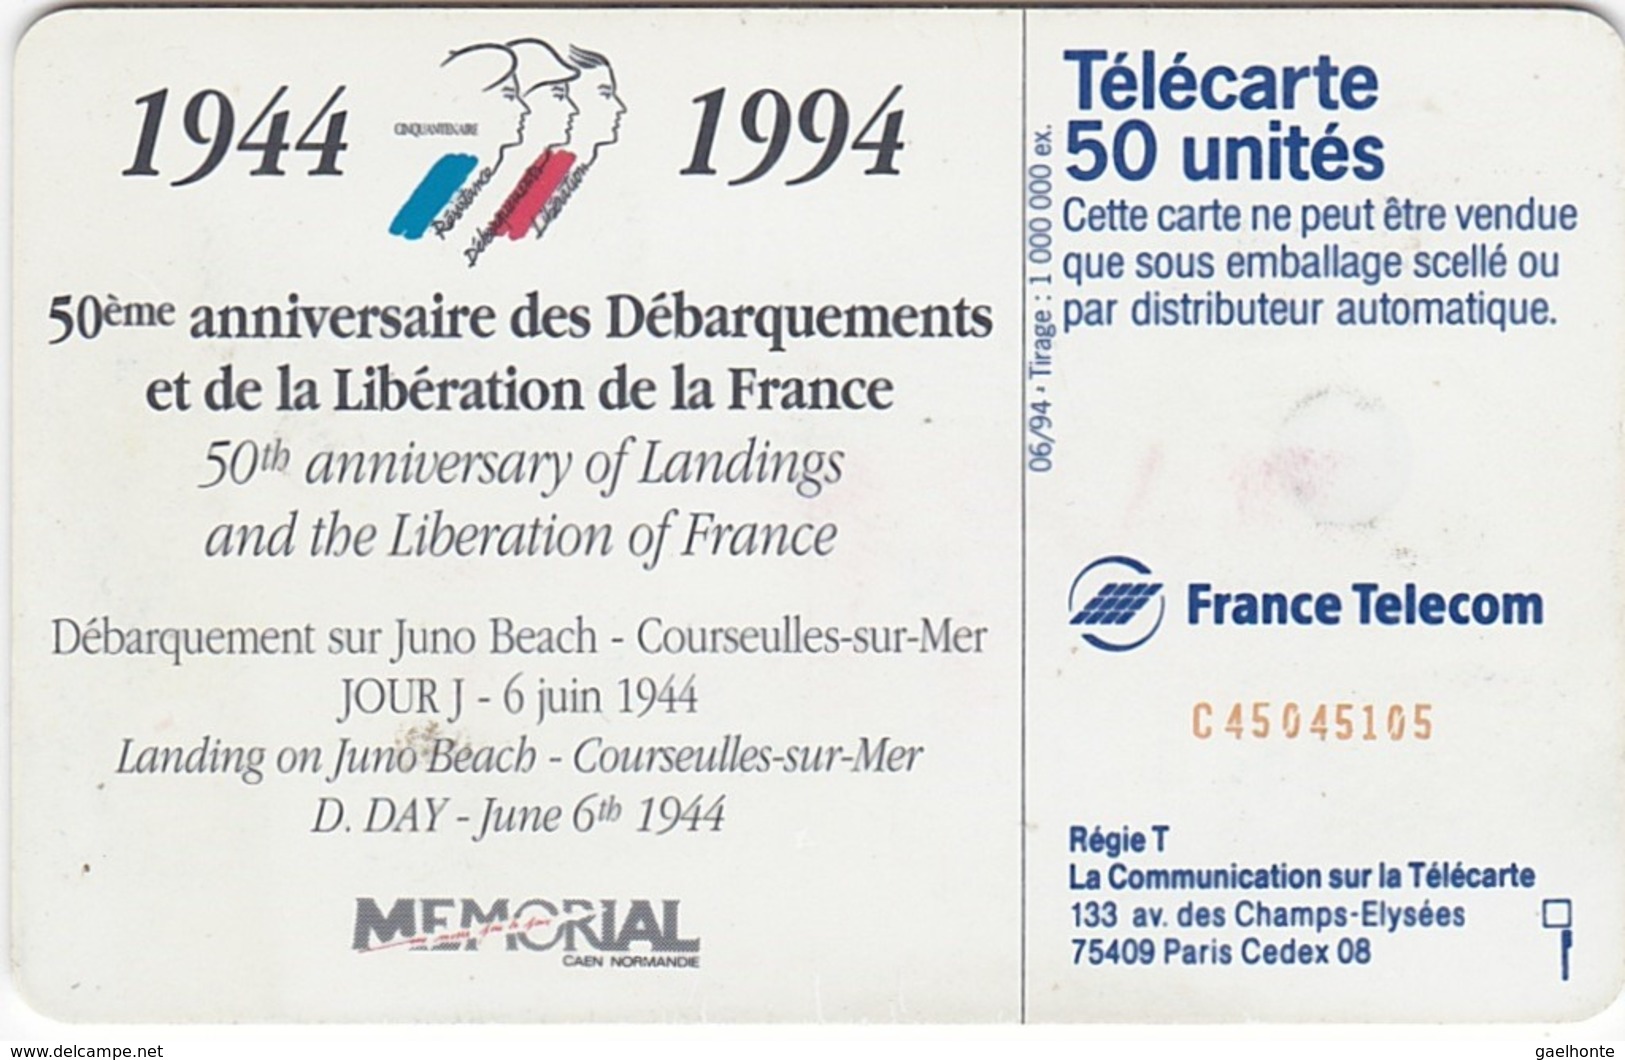 TC118 TÉLÉCARTE 50 UNITÉS - 1944-1994 - 50ème ANNIVERSAIRE DES DEBARQUEMENTS... - COURSEULLE SUR MER 06 JUIN 1944 - Leger